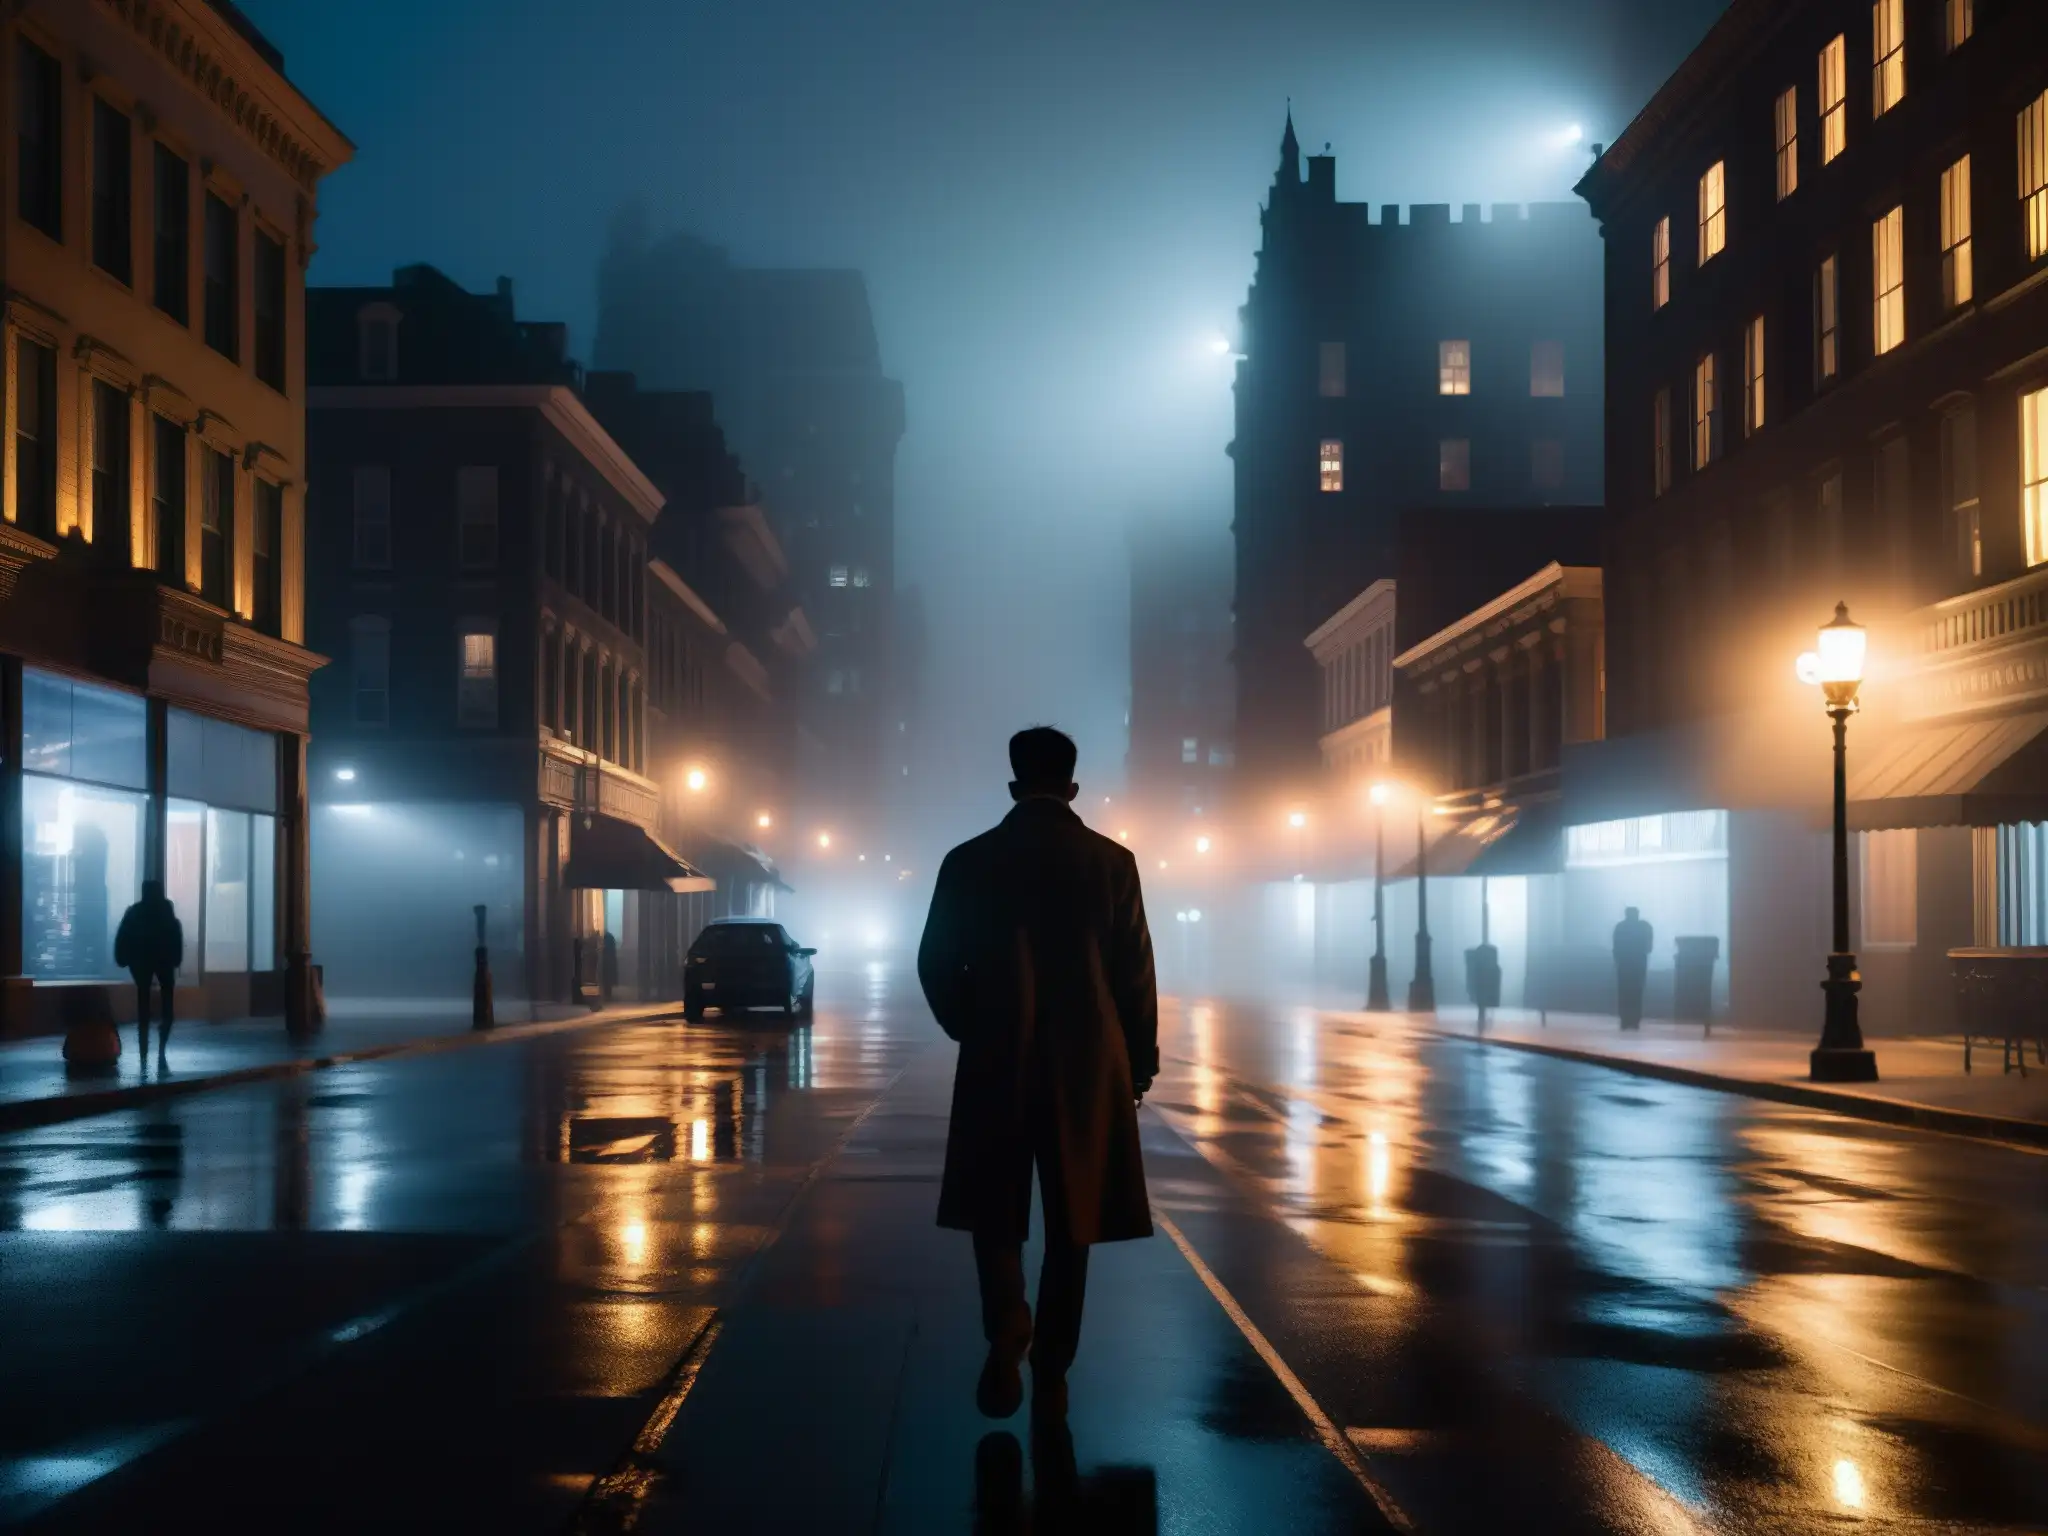 Una misteriosa calle nocturna de la ciudad, con sombras y neblina